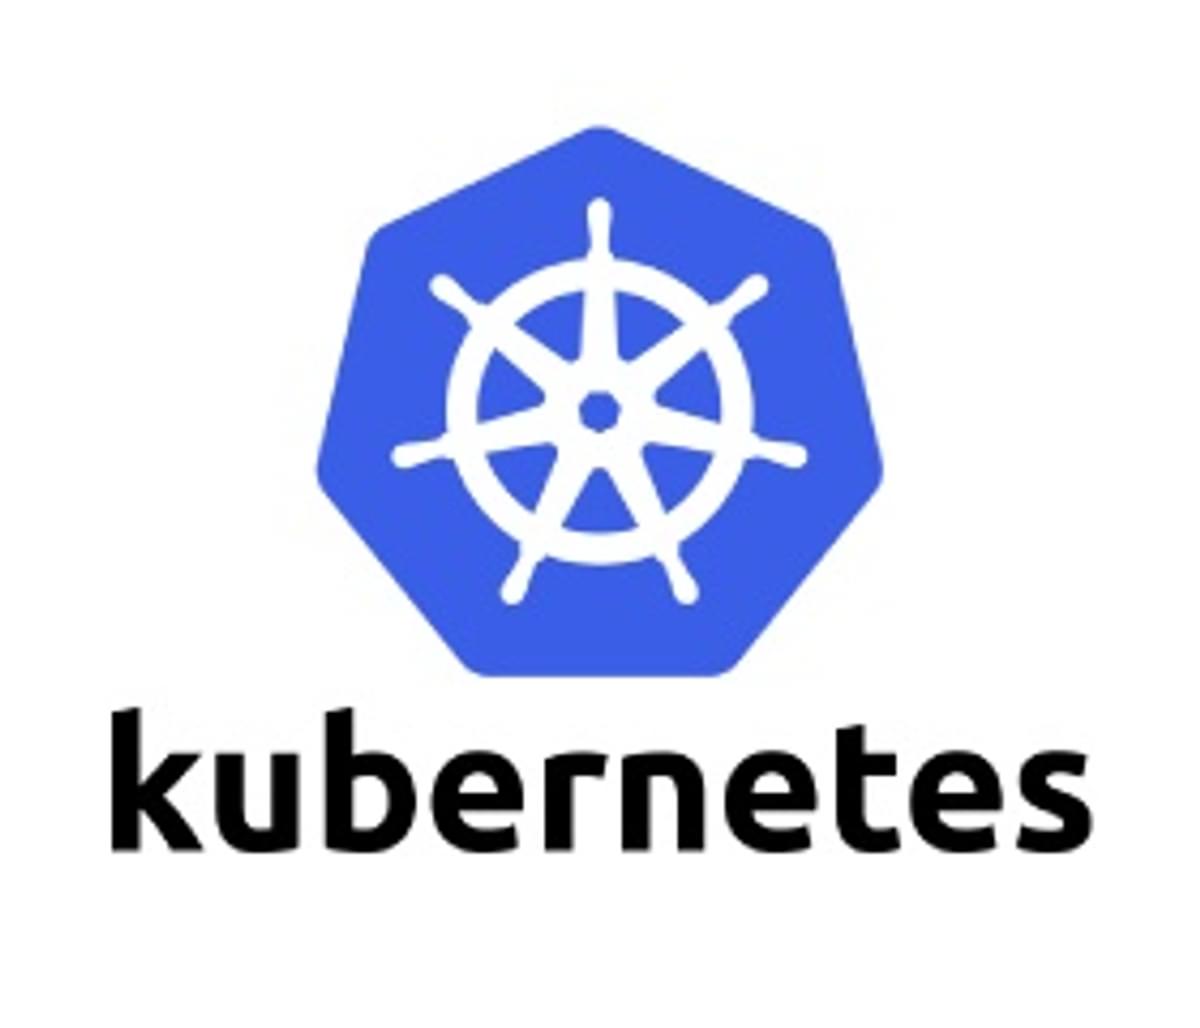 Kubernetes annonceert nieuwe release op Github image